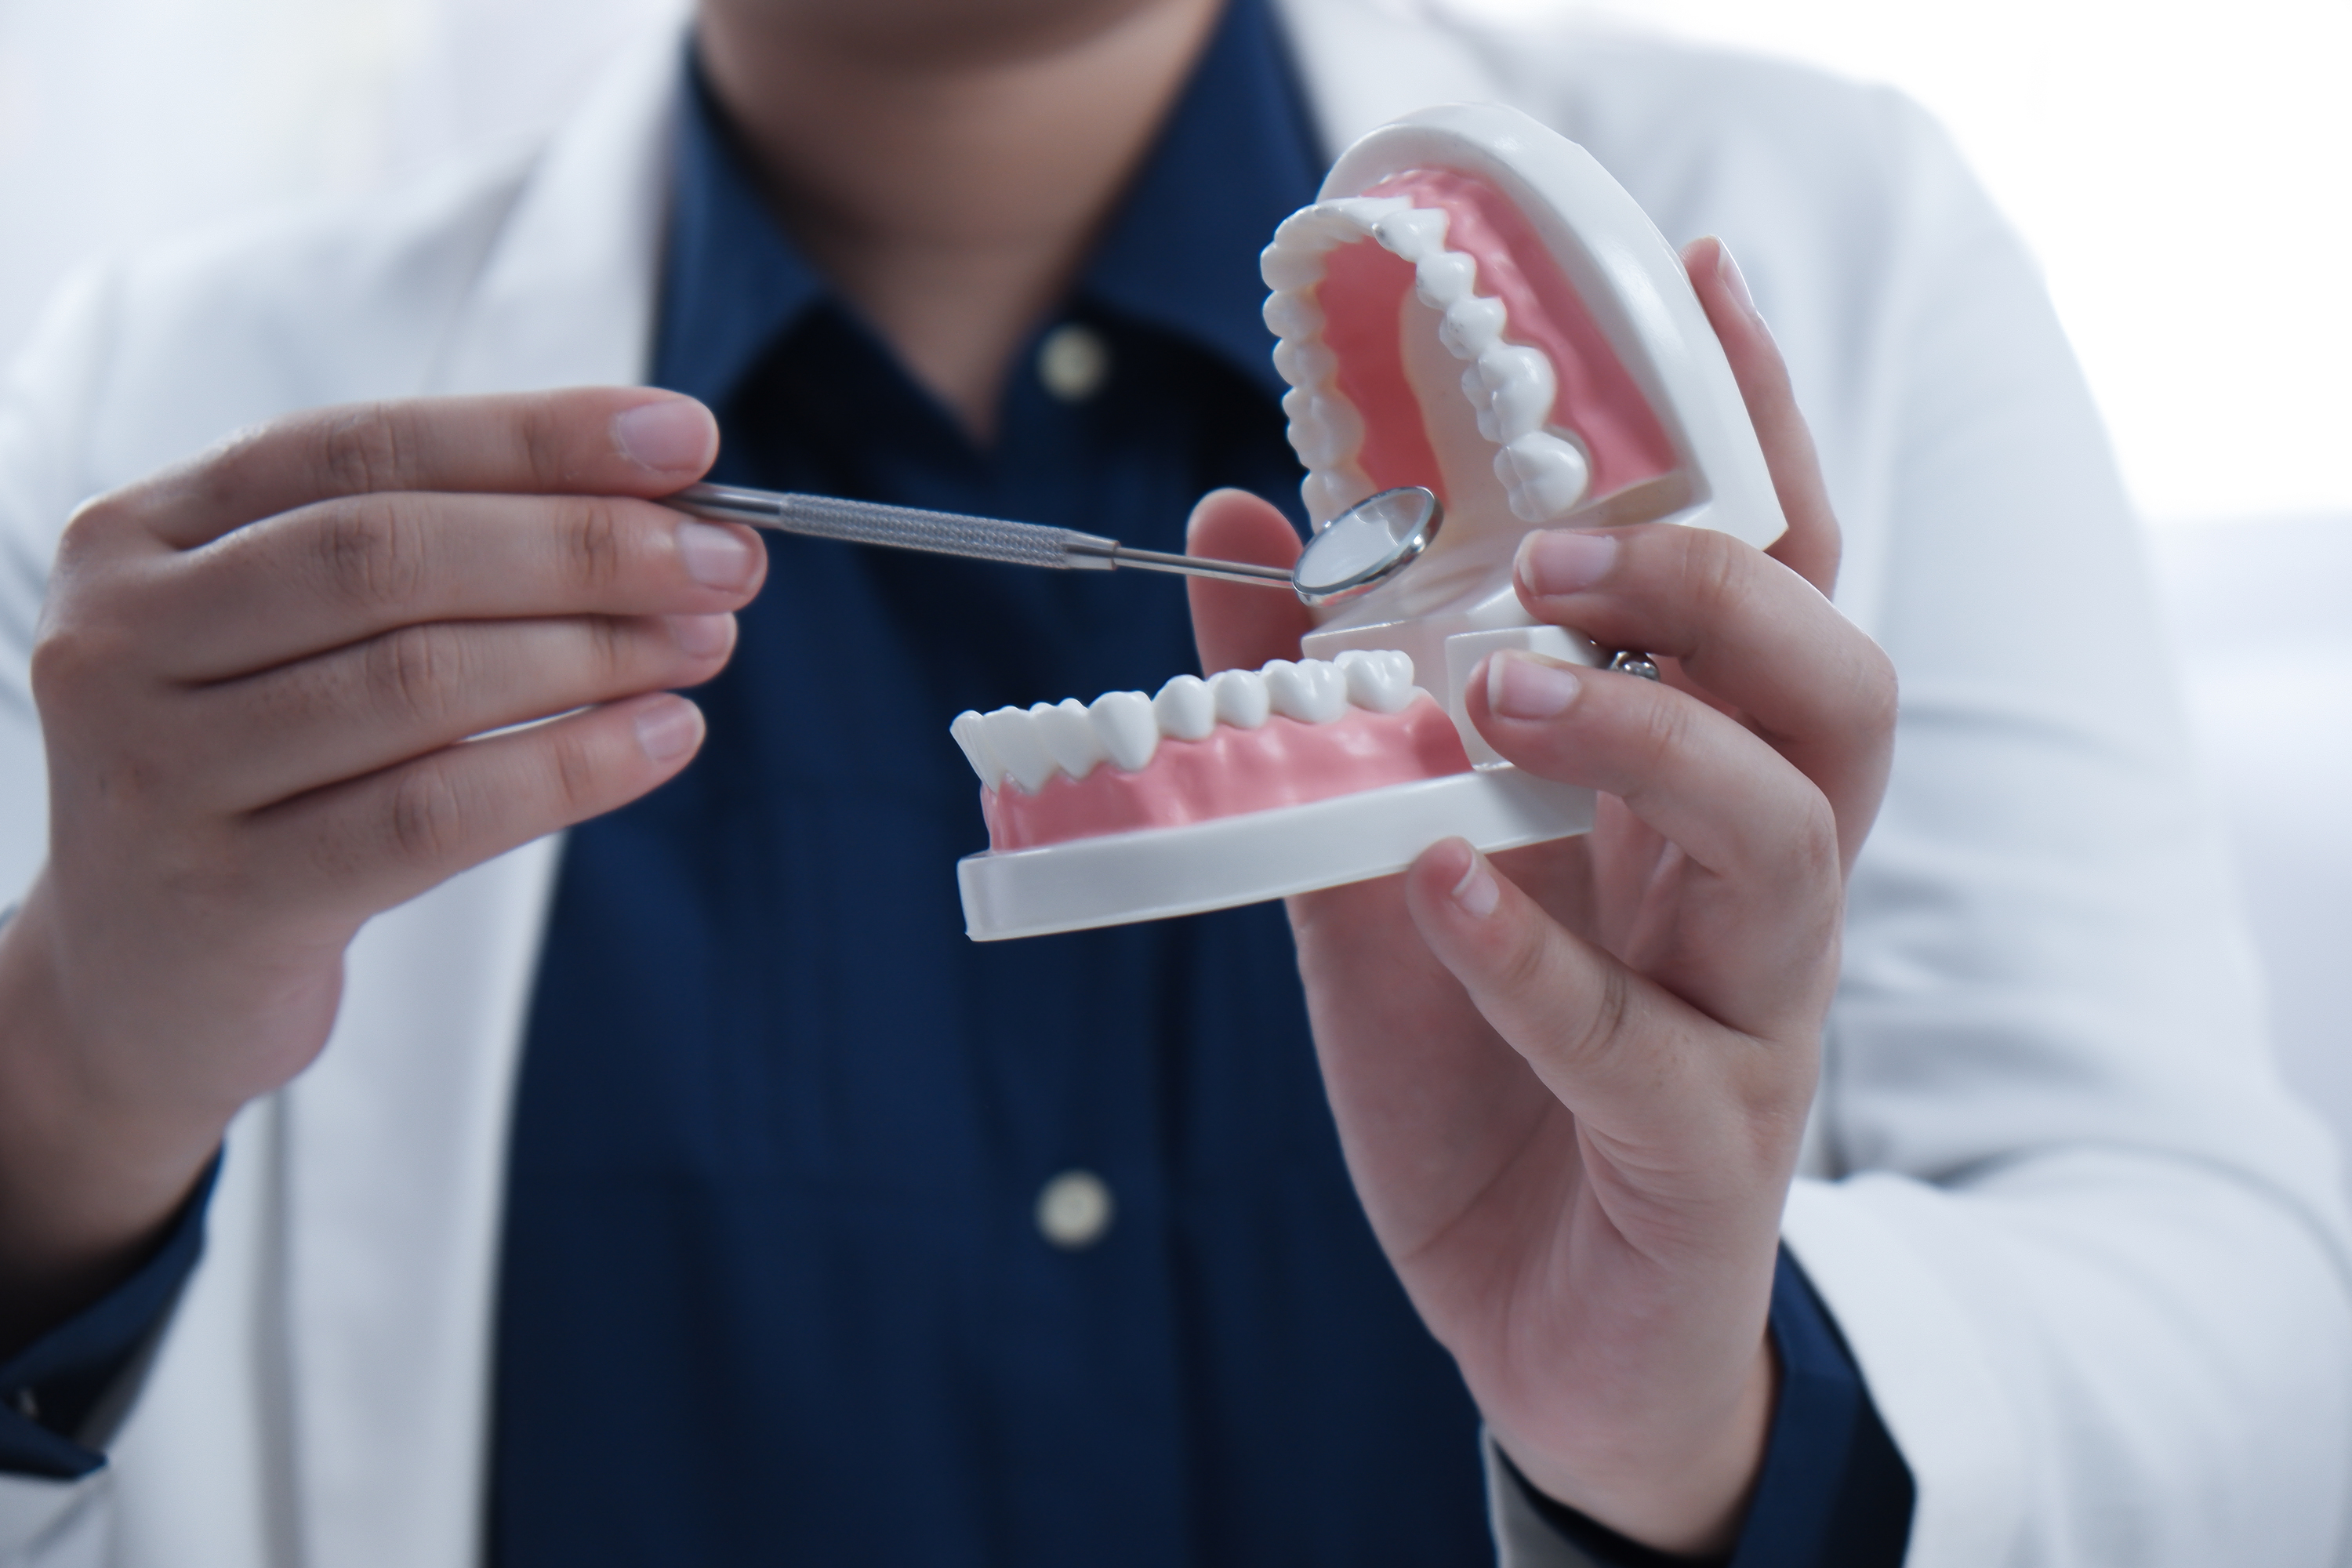  השתלות שיניים ביום אחד – רק אצל ד"ר פיש